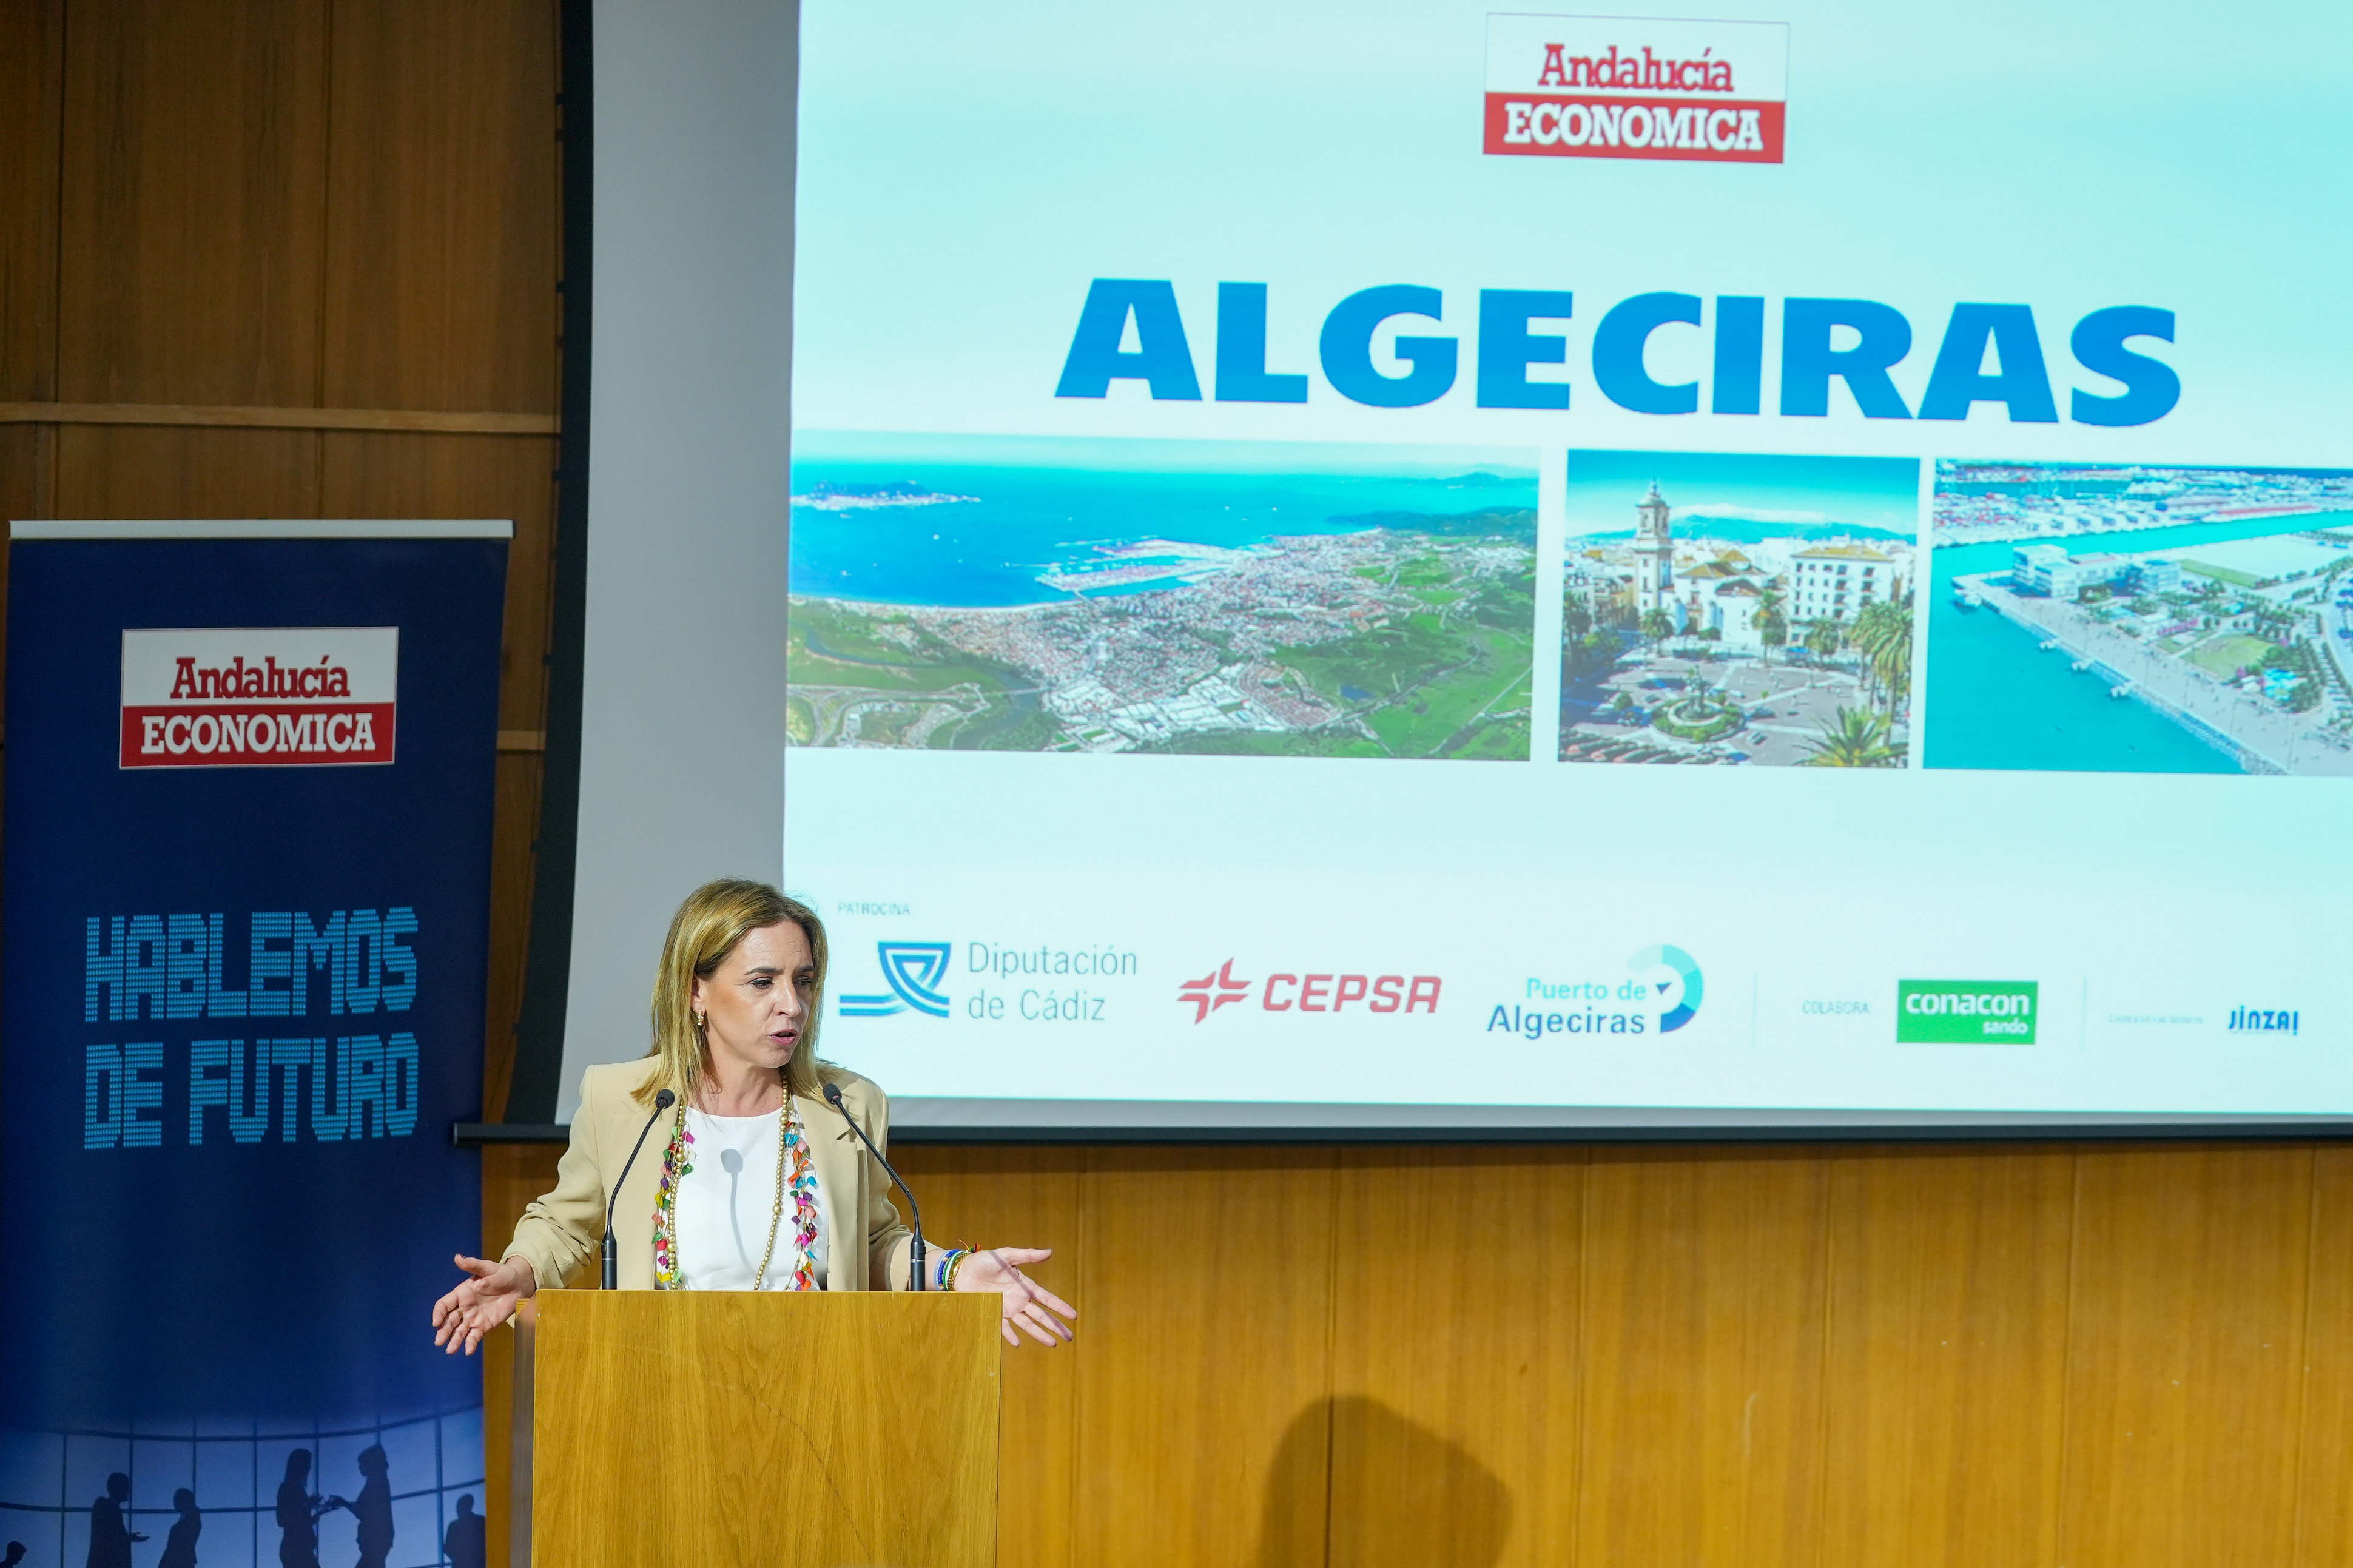 Almudena Martínez en la presentación de la revista Andalucía Económica dedicada a Algeciras (1)